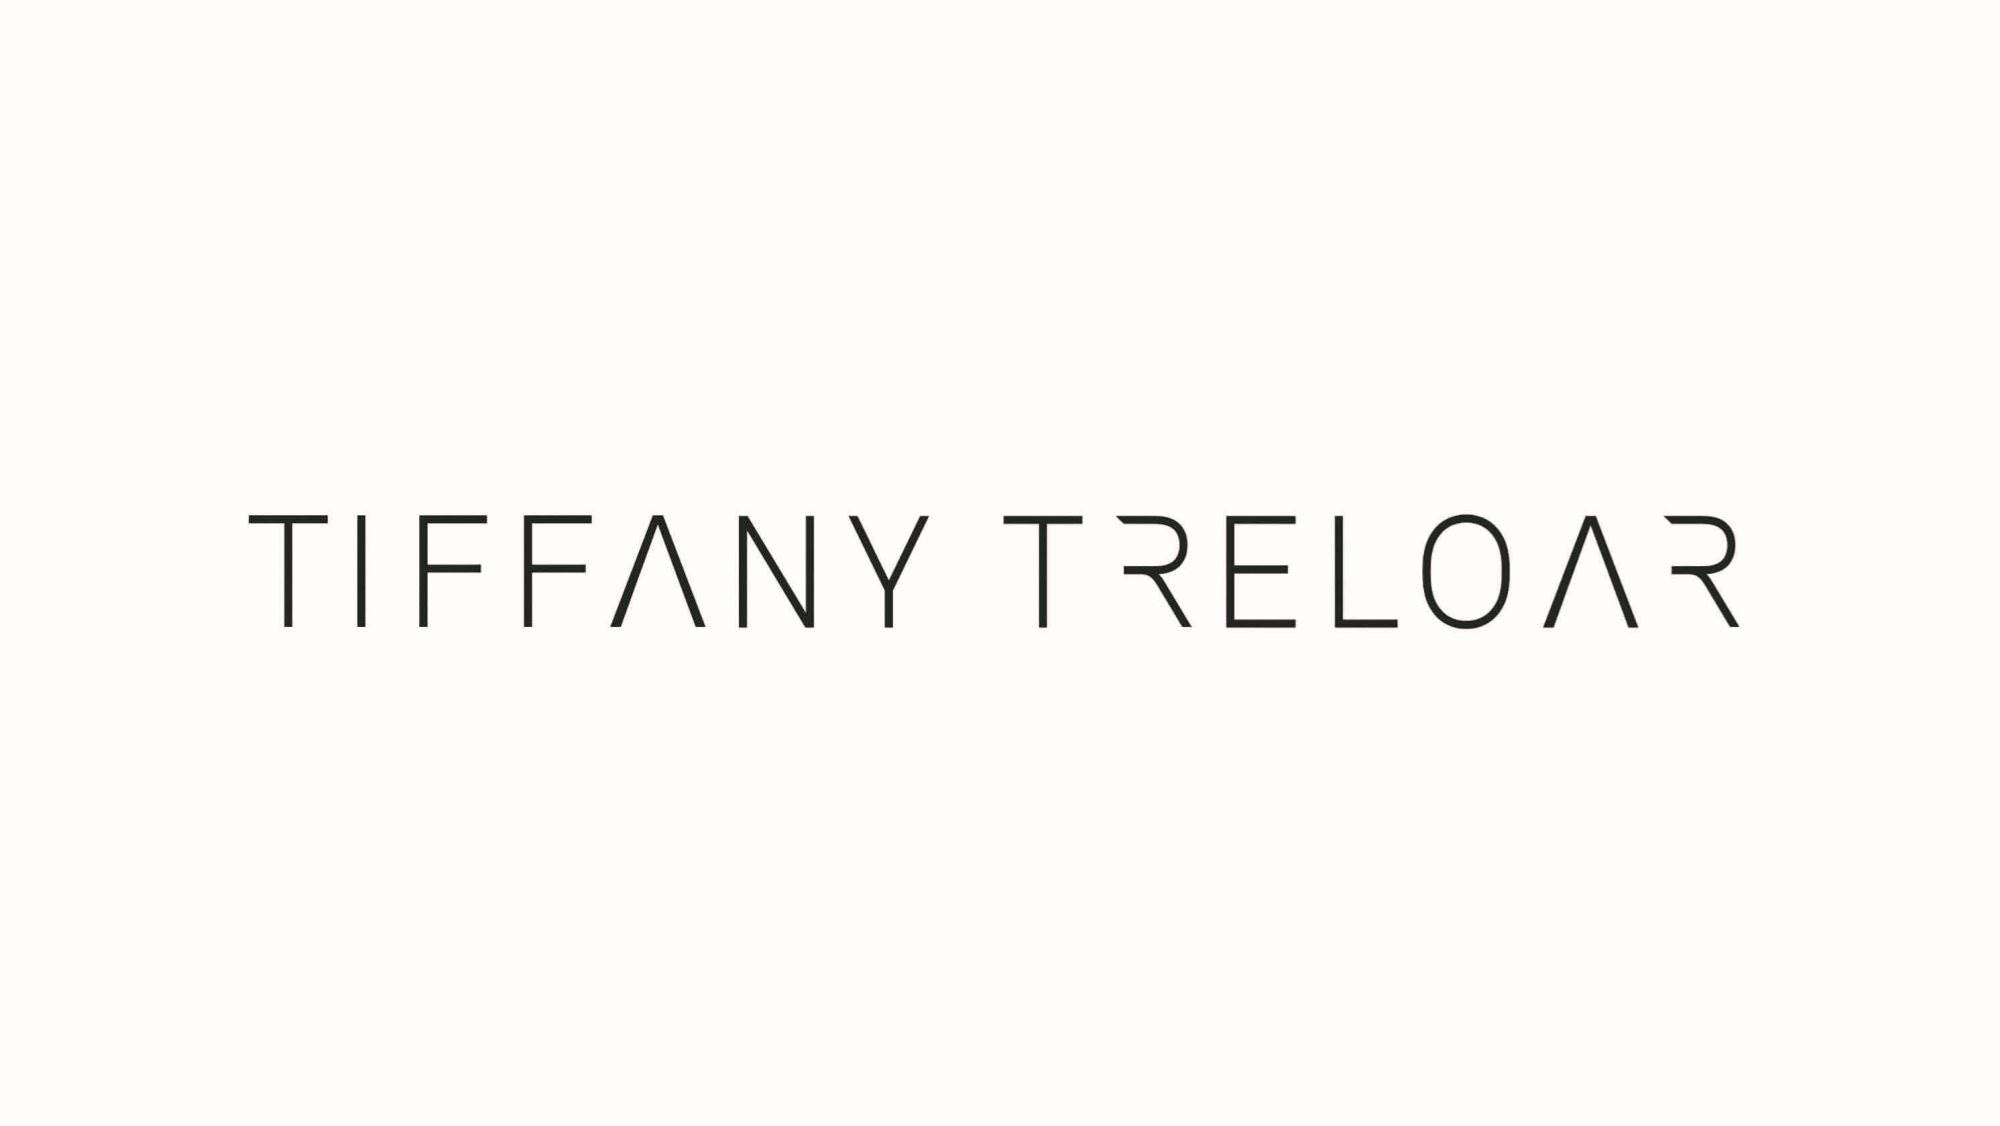 Tiffany Treloar